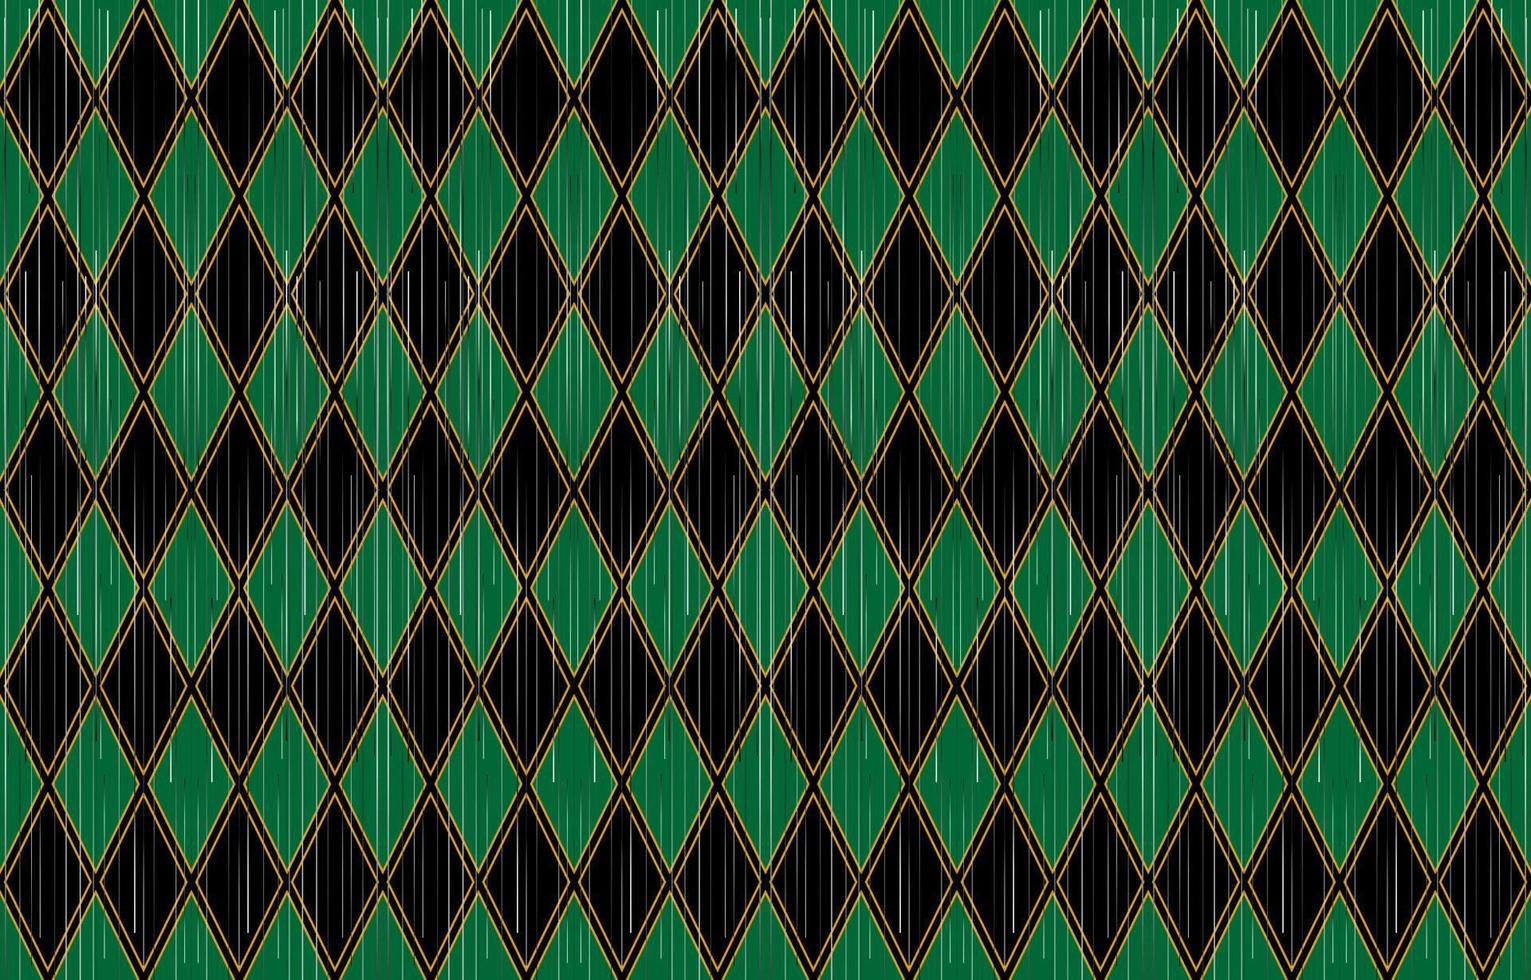 ikat etnisch patroon. argyle donker groen en zwart kleur achtergrond. traditioneel kleding stof in tribal kalkoen Afrikaanse Indisch aziatisch. etnisch meetkundig kleding stof textiel vector illustratie borduurwerk stijl.